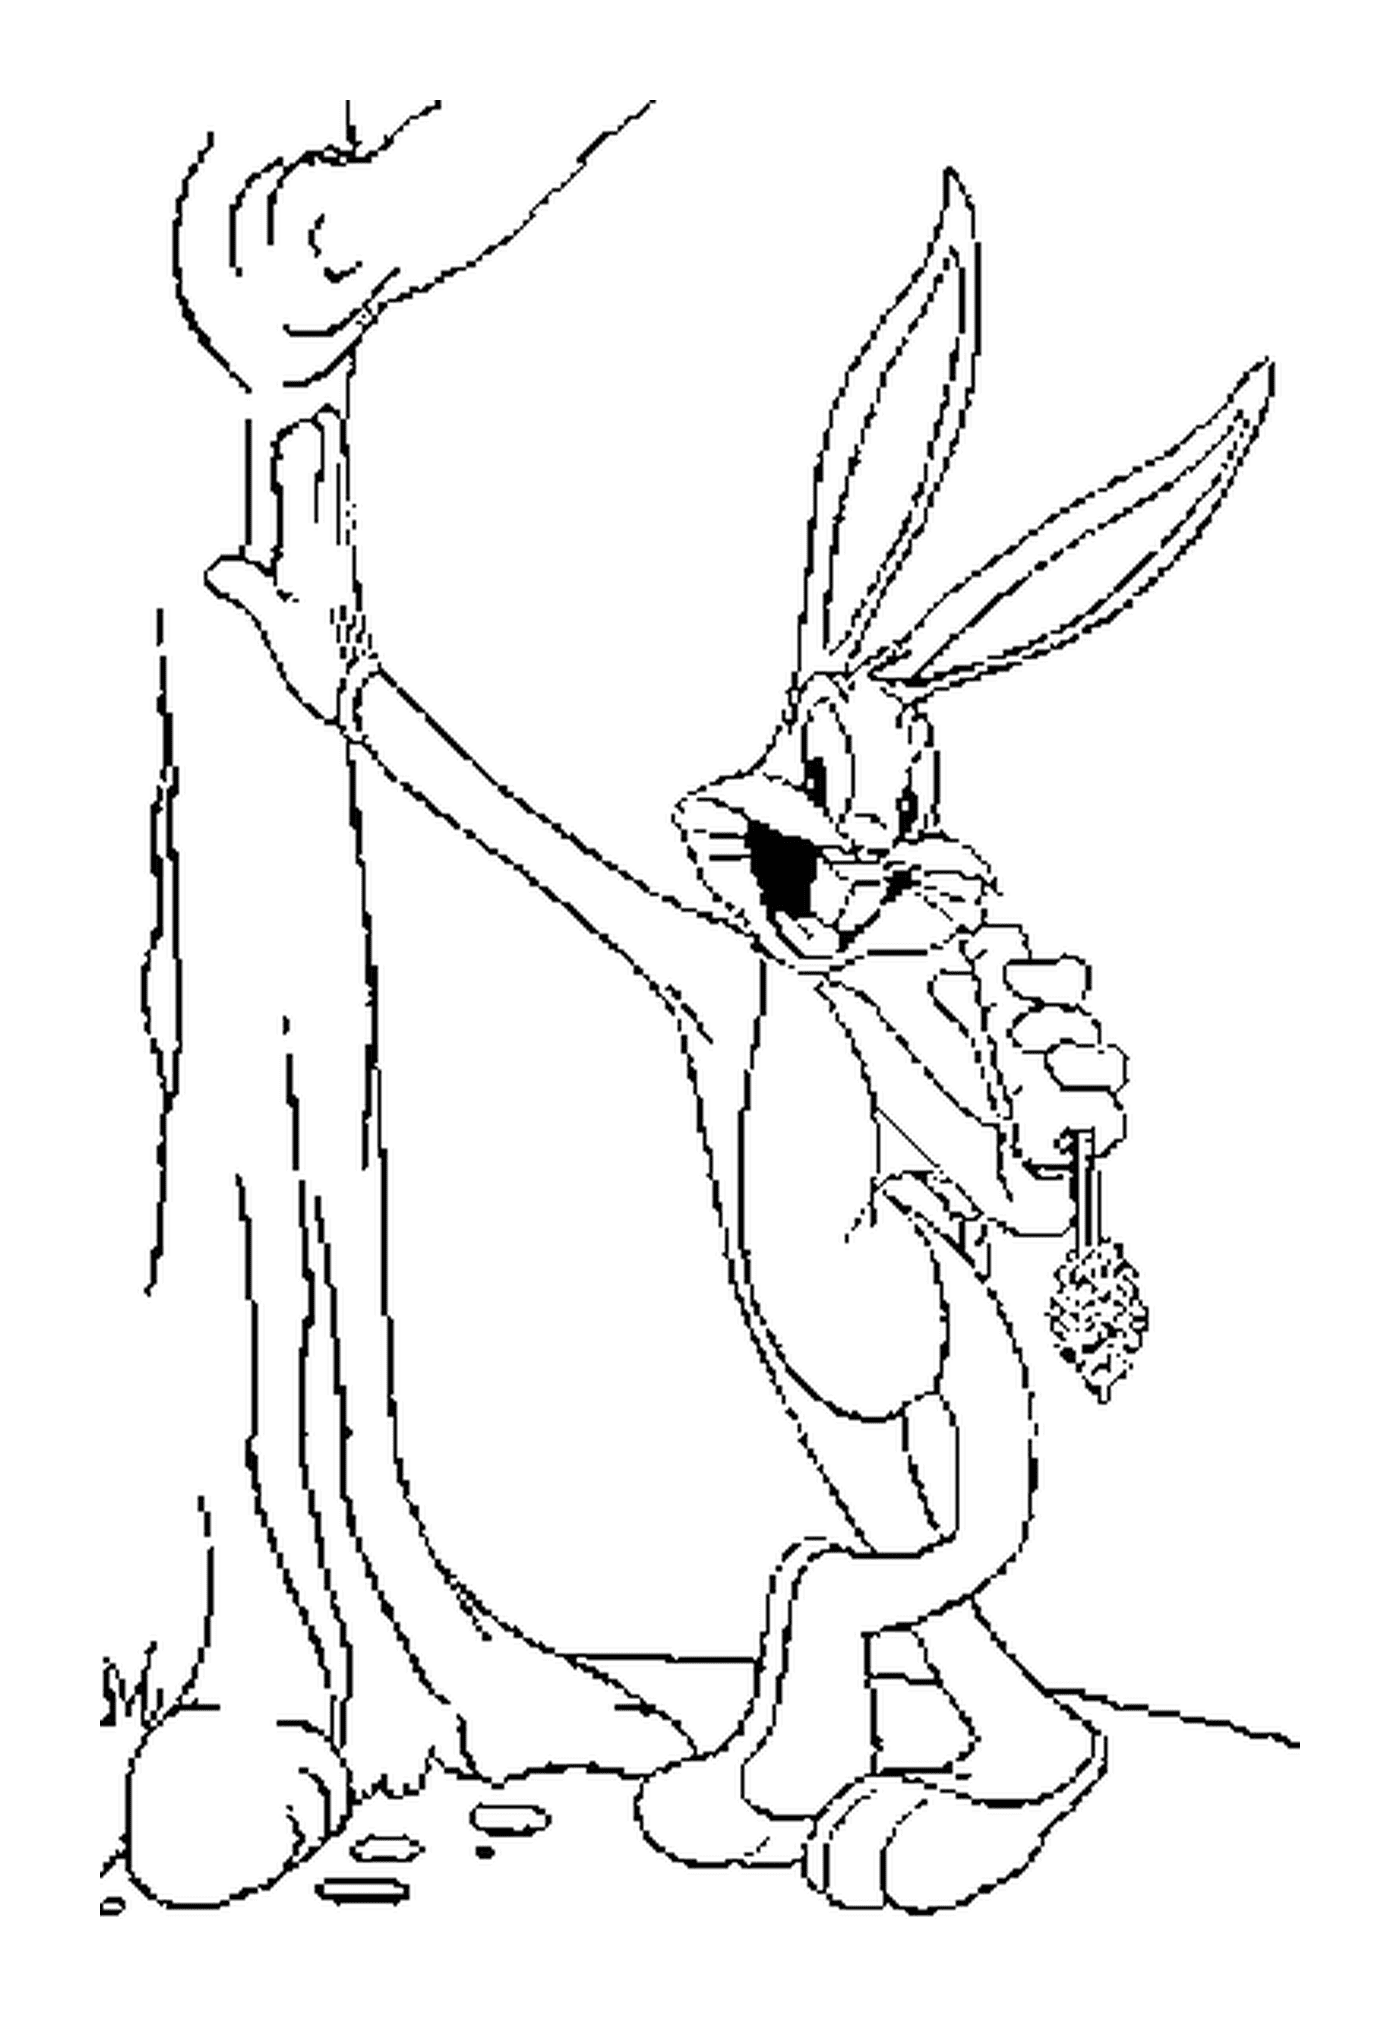   Bugs Bunny mange une carotte près d'un arbre 